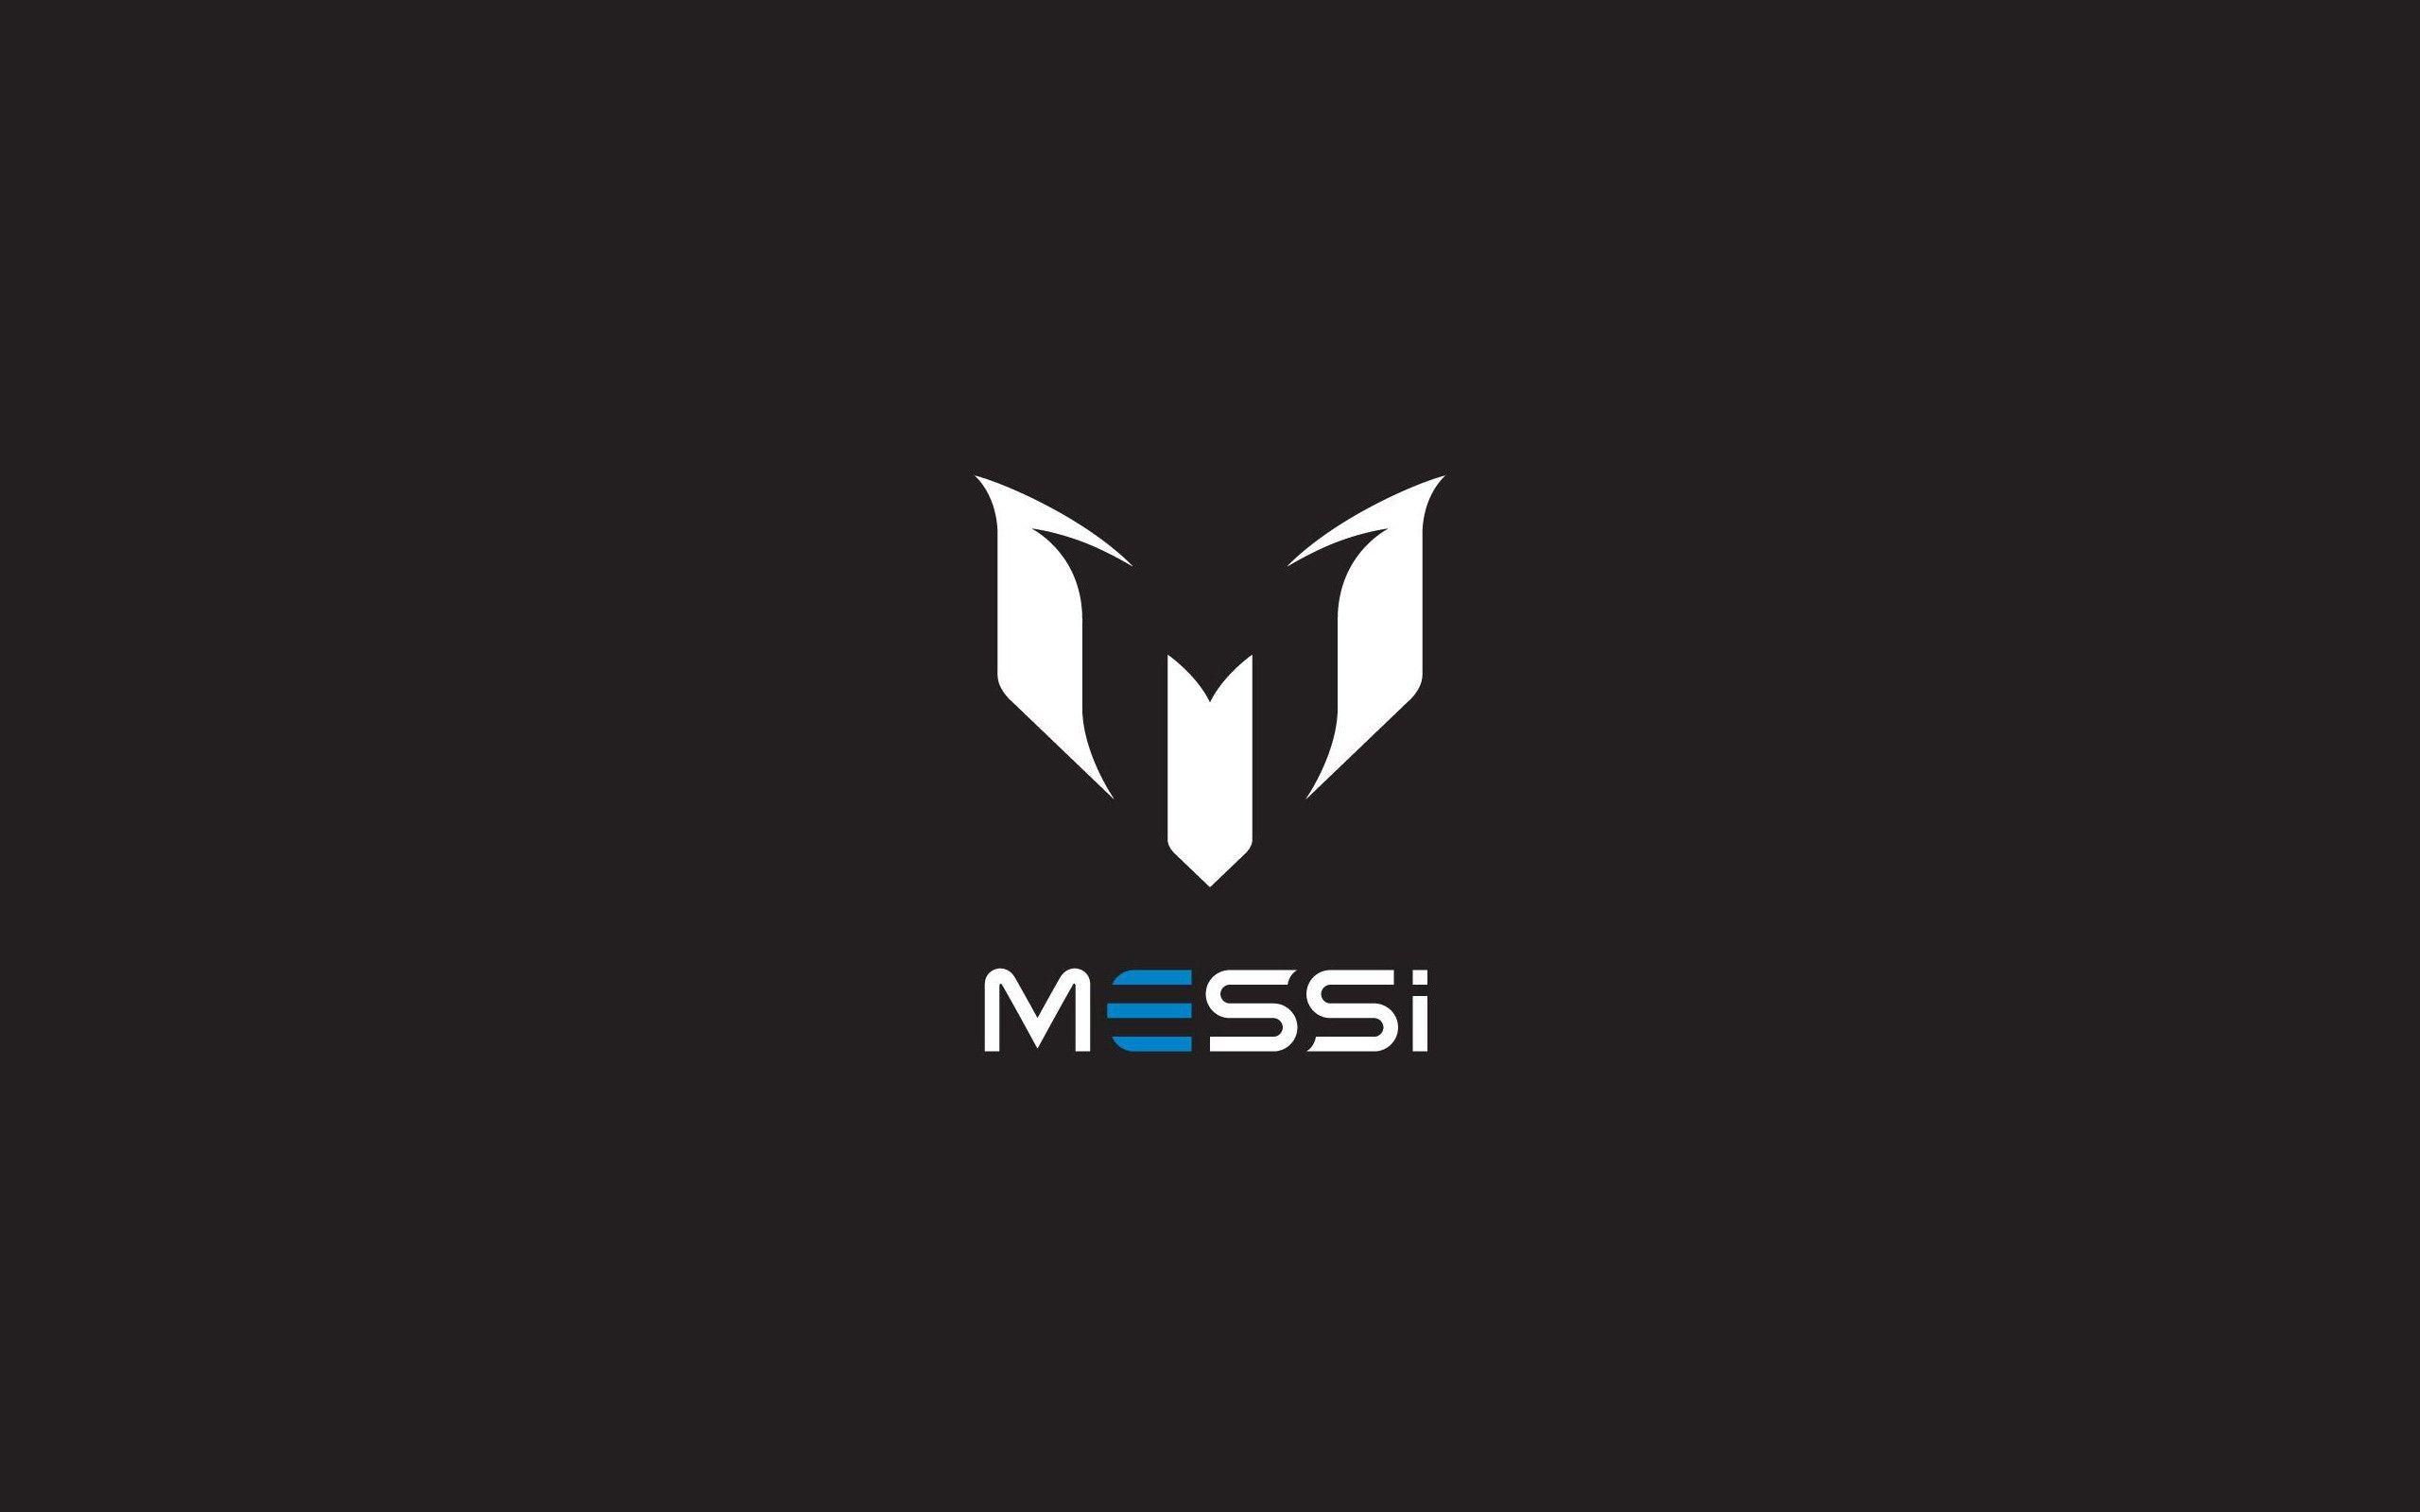 Messi logo Adidas wallpaper free desktop background